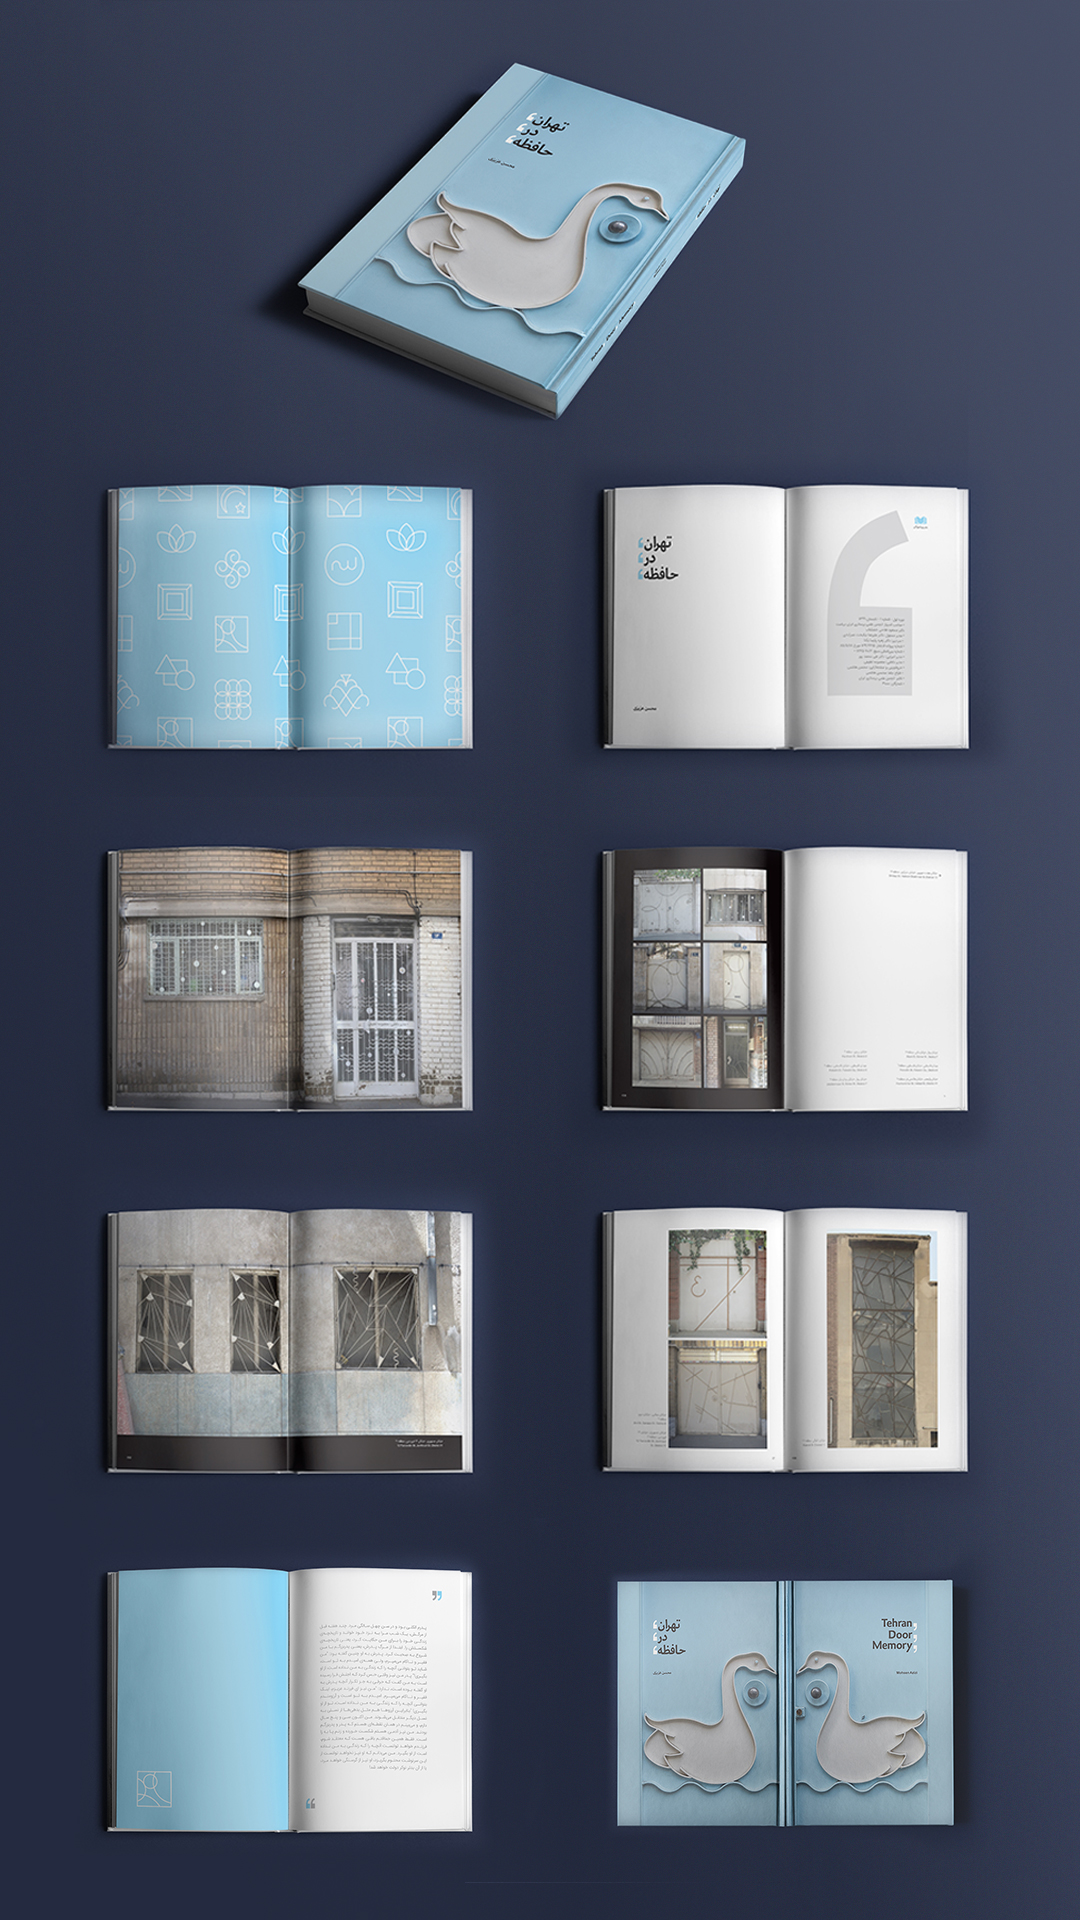 tehran door memory book by mohsen azizi pictures of doors in tehran